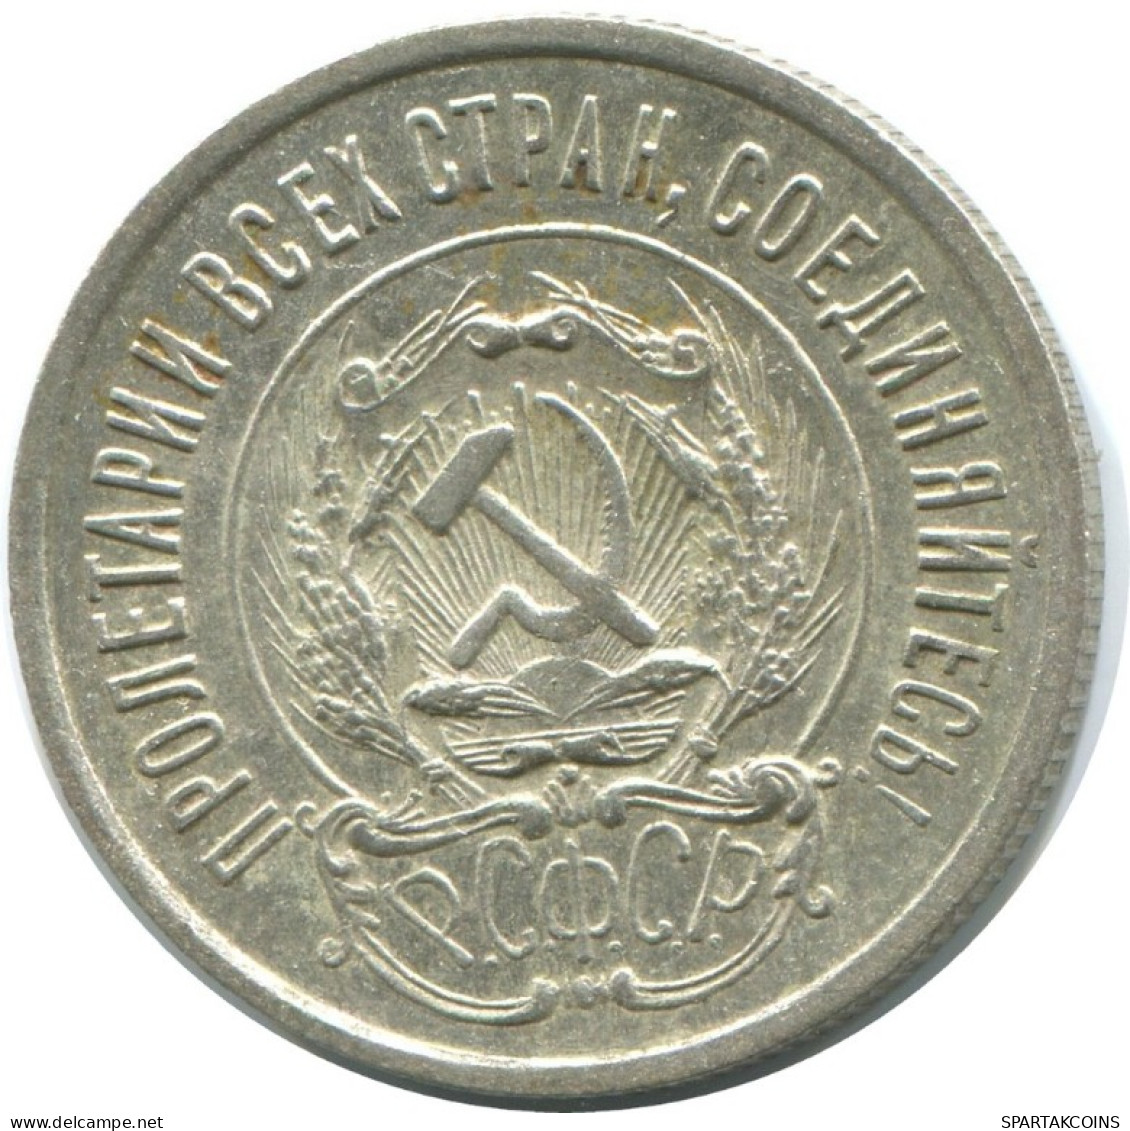 20 KOPEKS 1923 RUSSLAND RUSSIA RSFSR SILBER Münze HIGH GRADE #AF609.D.A - Russia